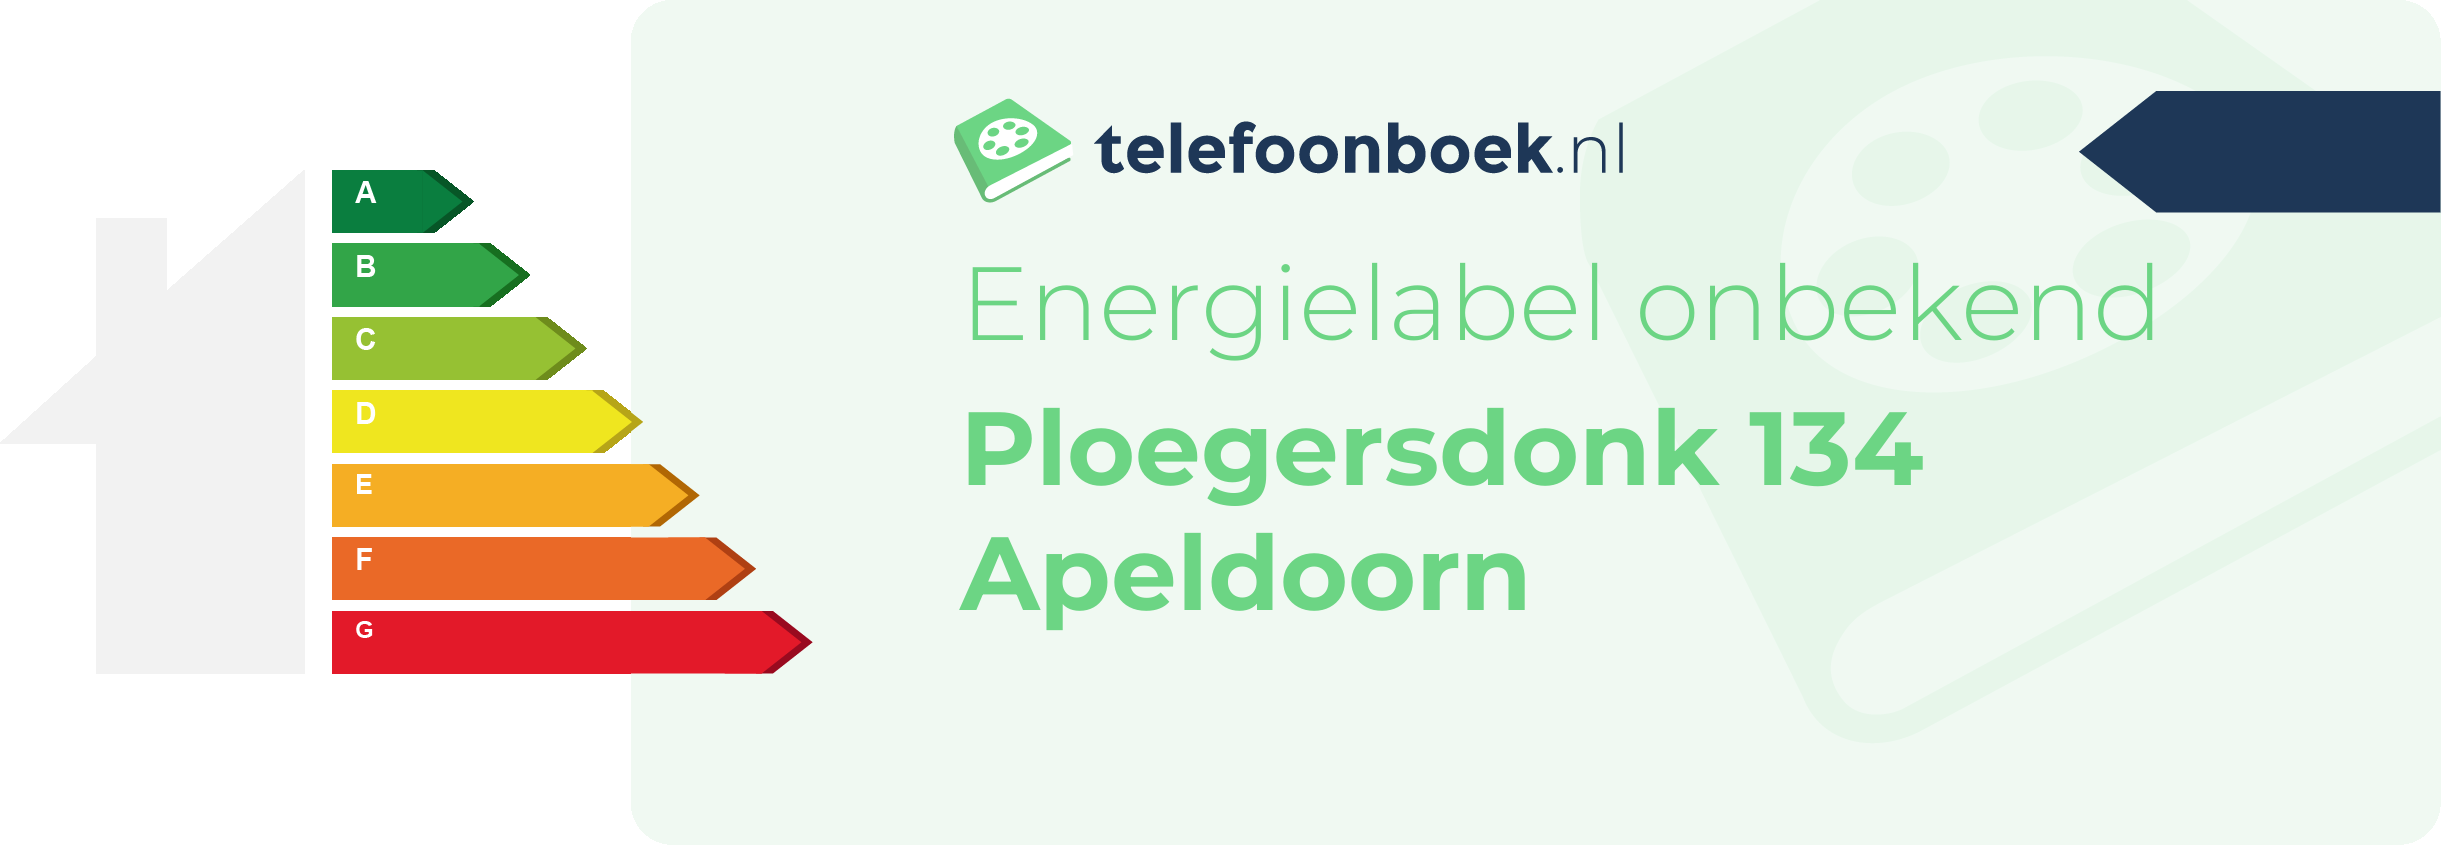 Energielabel Ploegersdonk 134 Apeldoorn